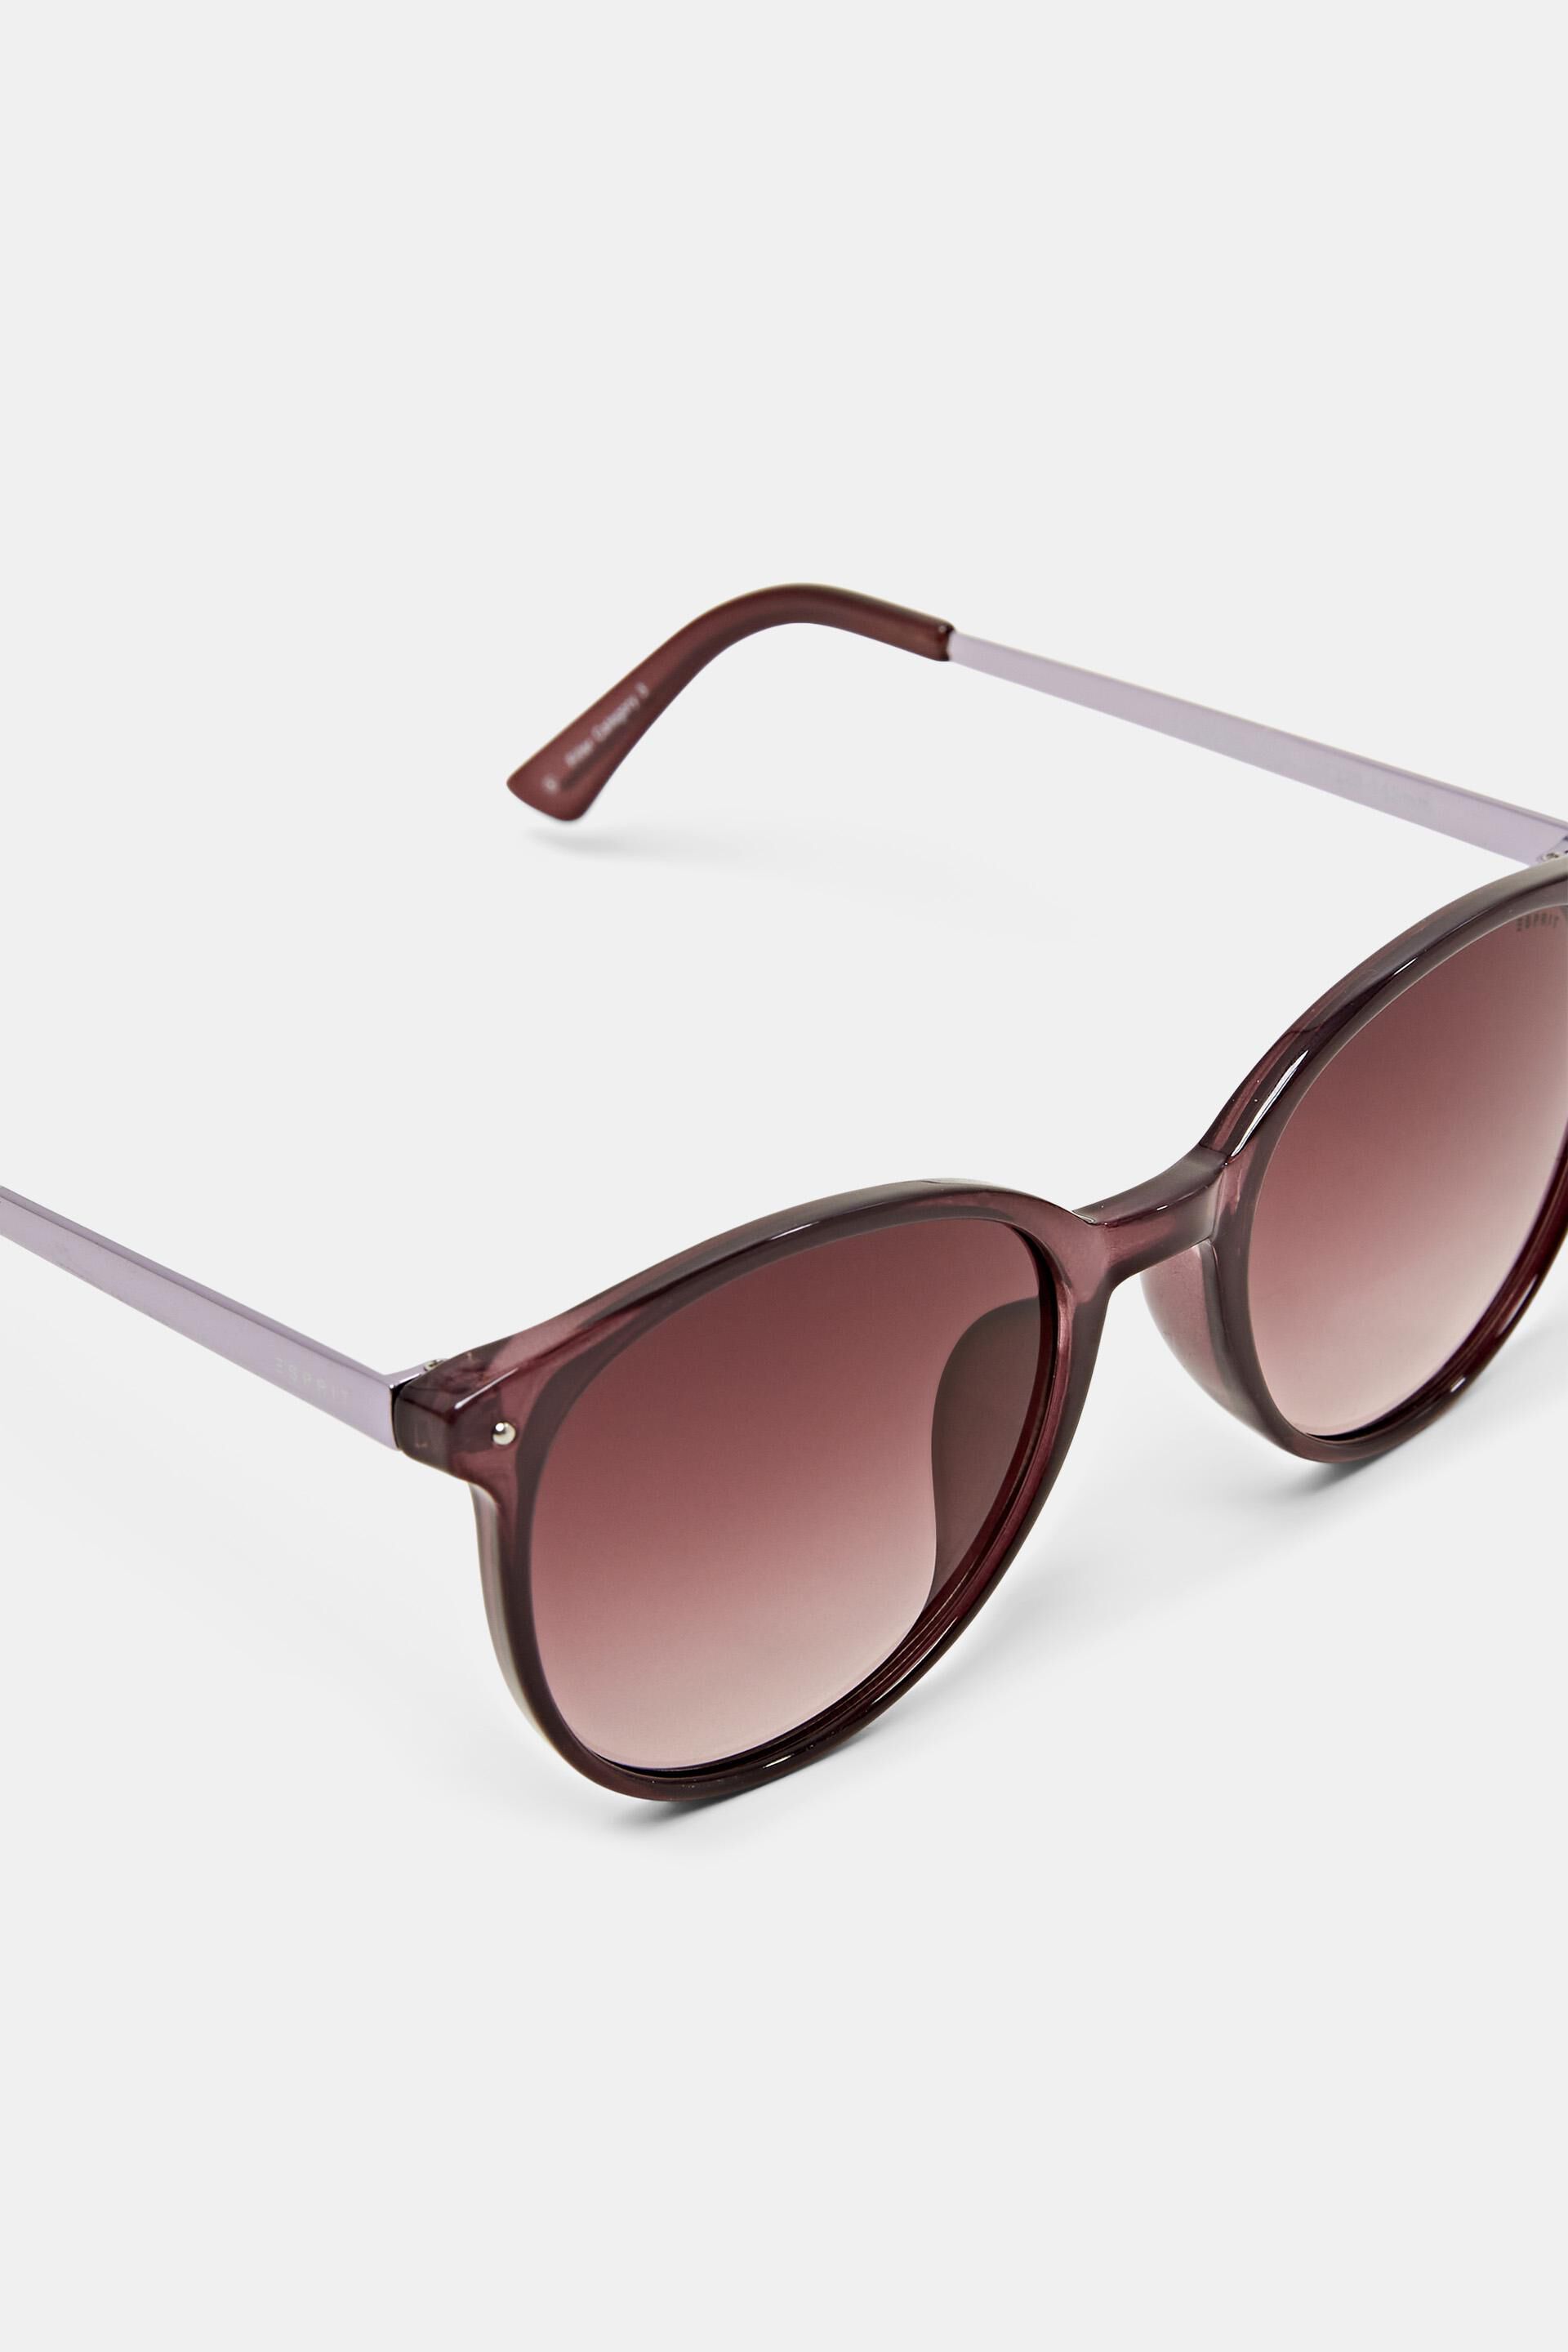 Esprit Online Store Sonnenbrille mit rundem Rahmen